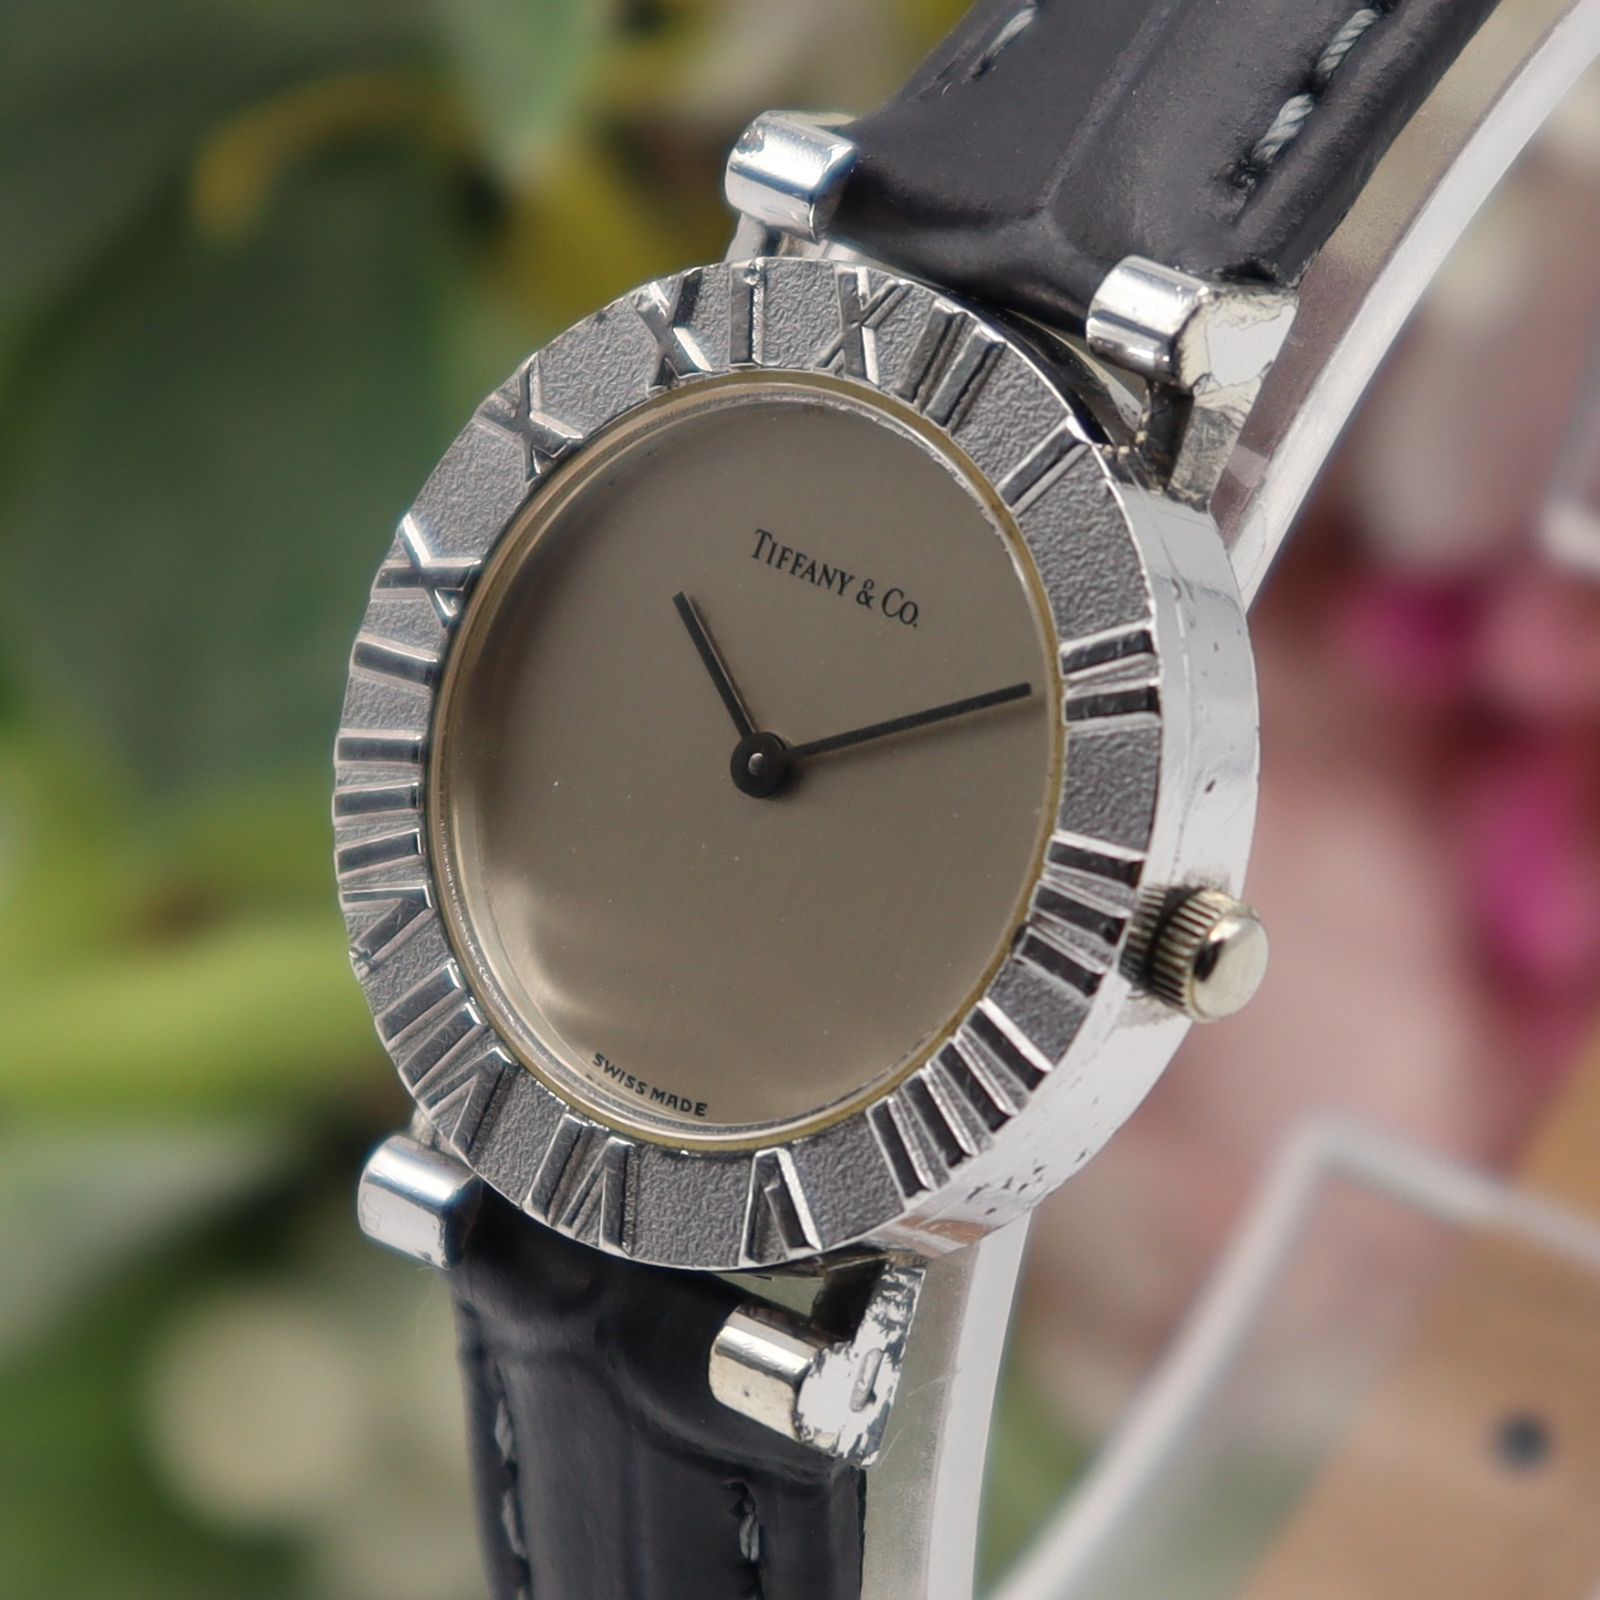 16,800円ティファニー アトラス レディース 腕時計 シルバー 革ベルト